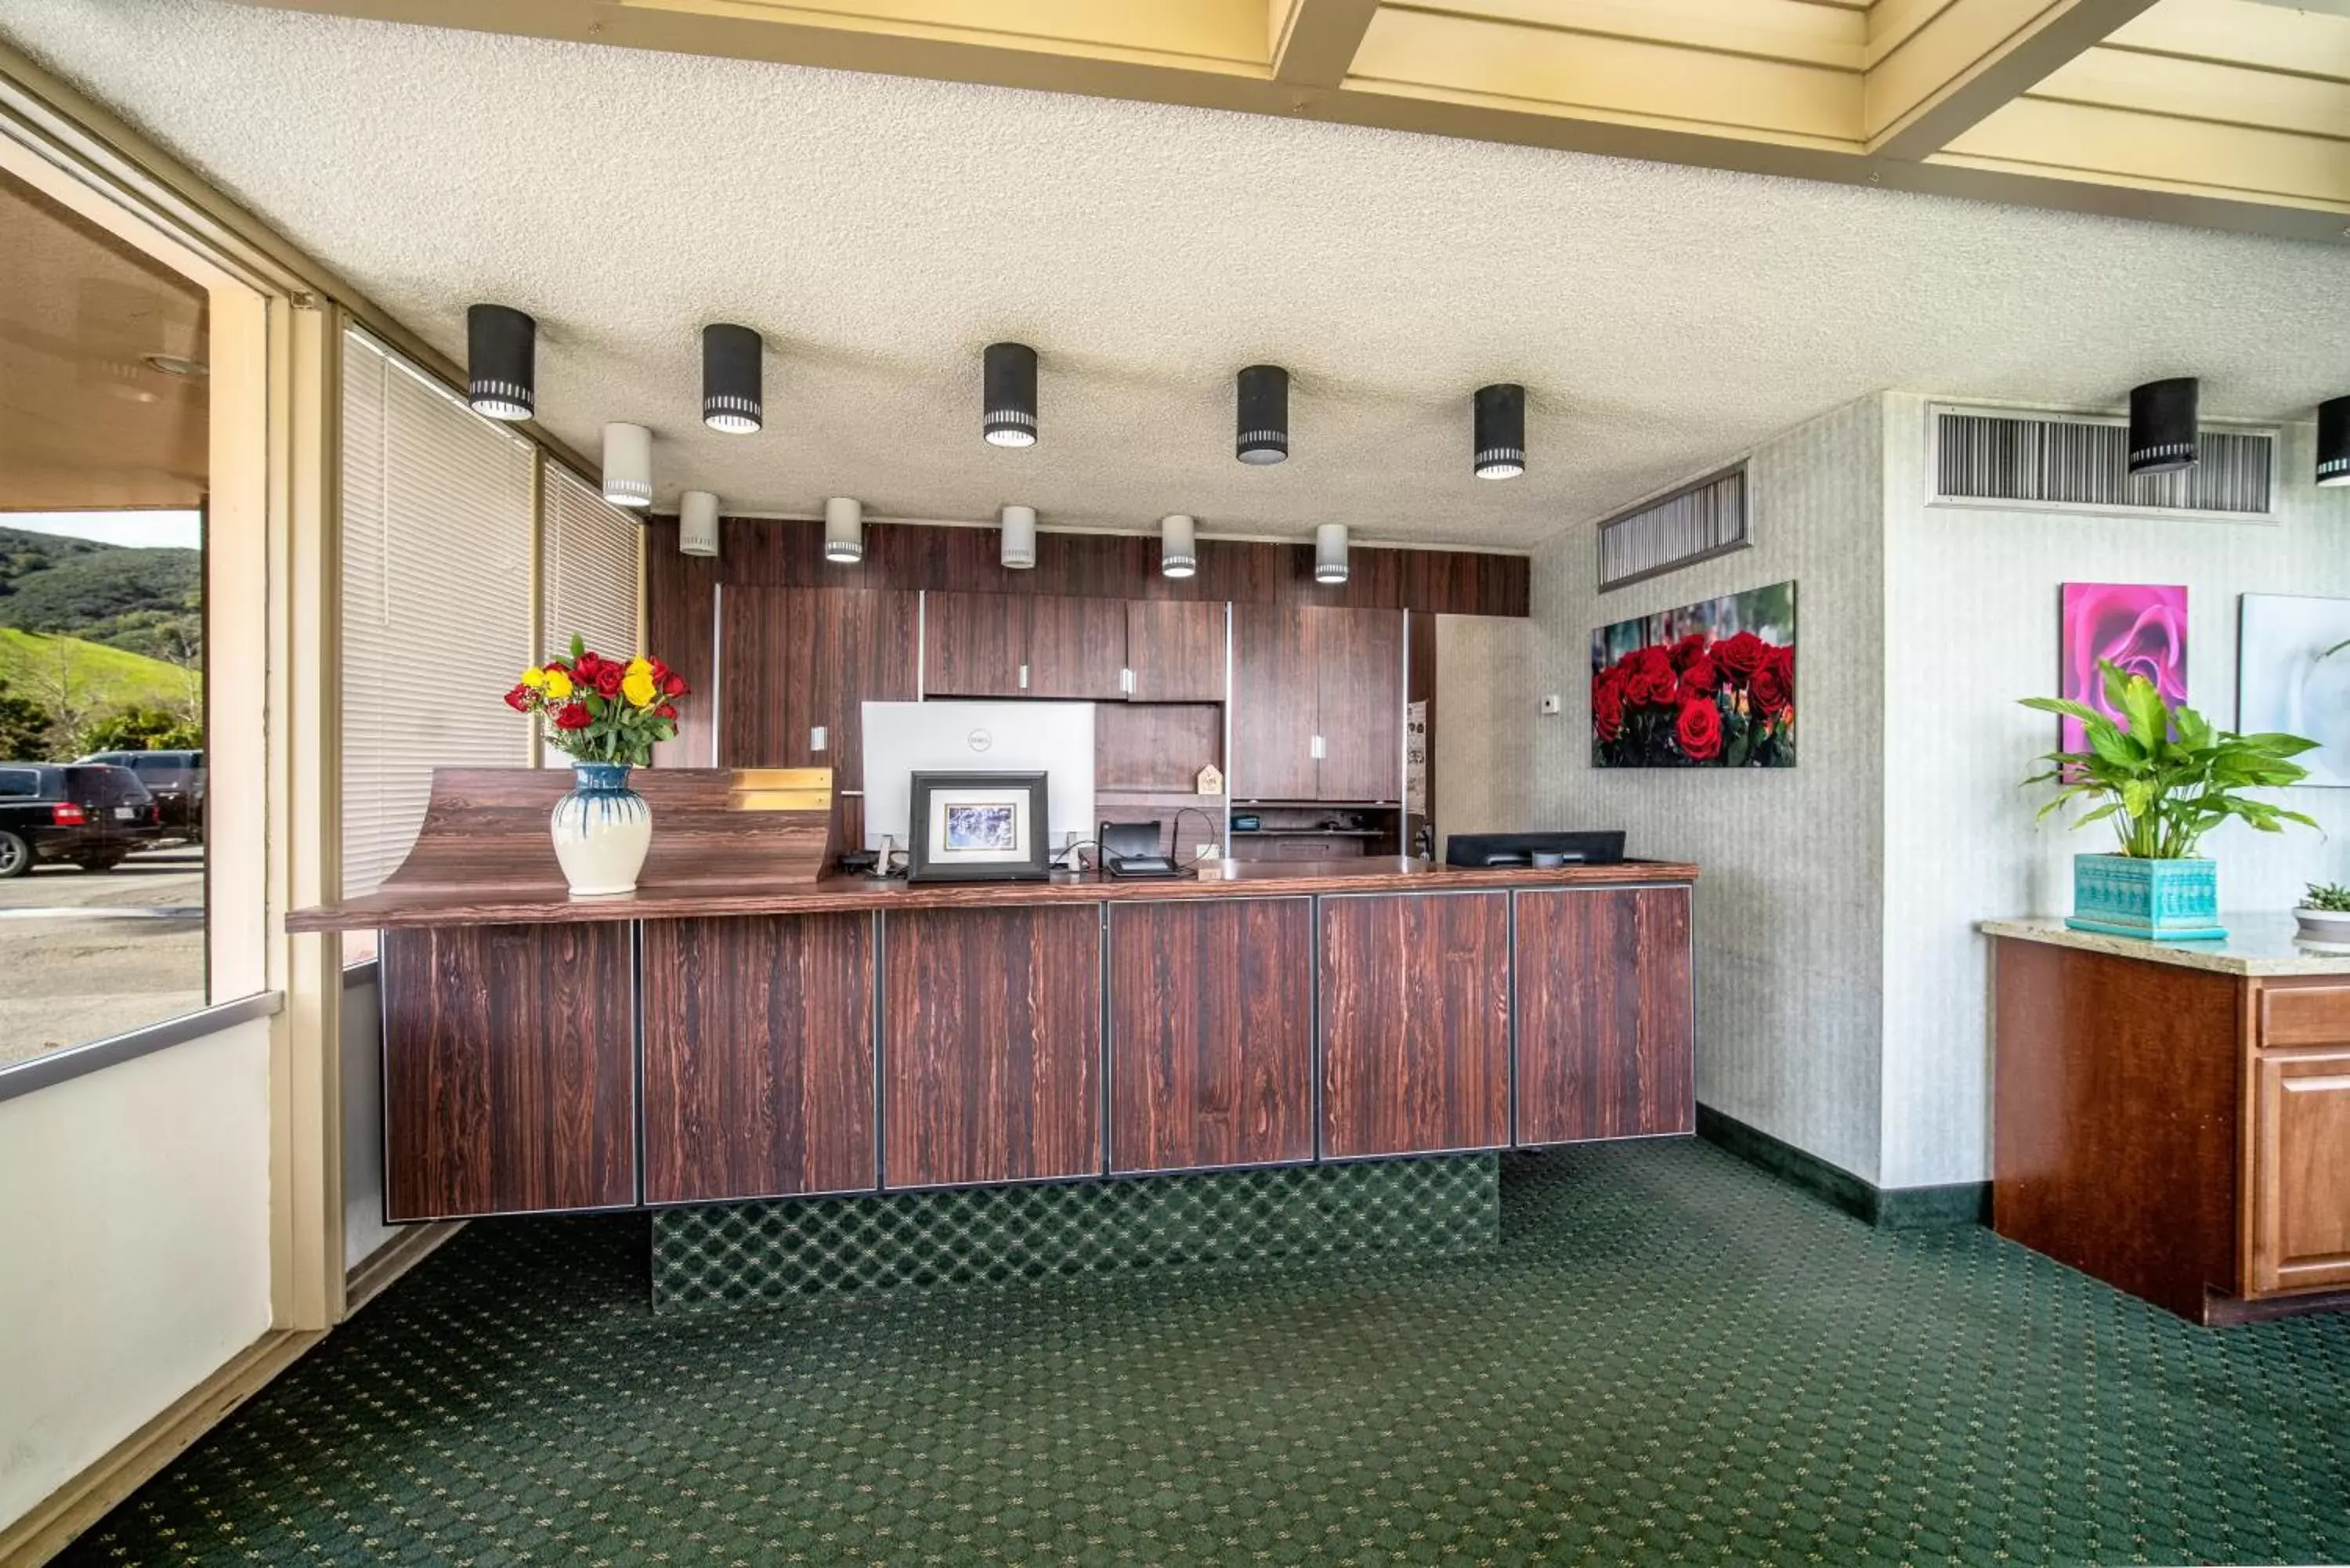 Lobby/Reception in Hotel Calle Joaquin - San Luis Obispo